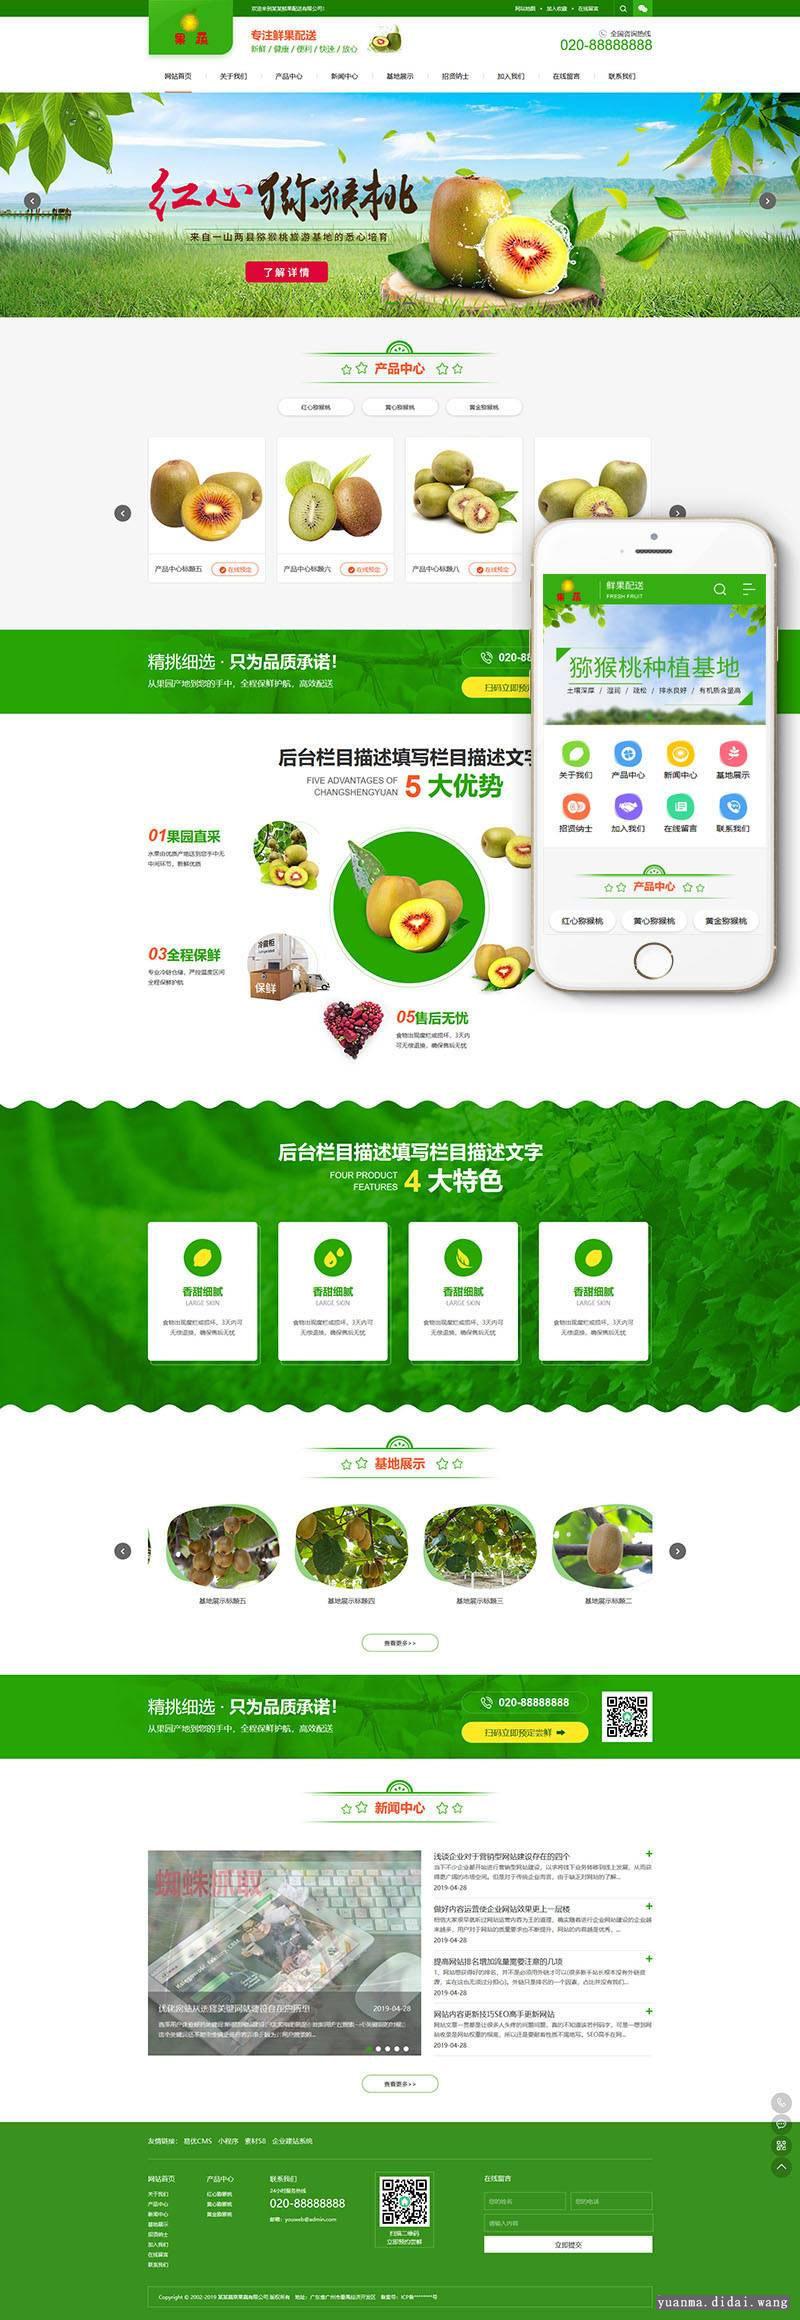 蔬菜果蔬鲜果配送公司网站源码 织梦dedecms模板